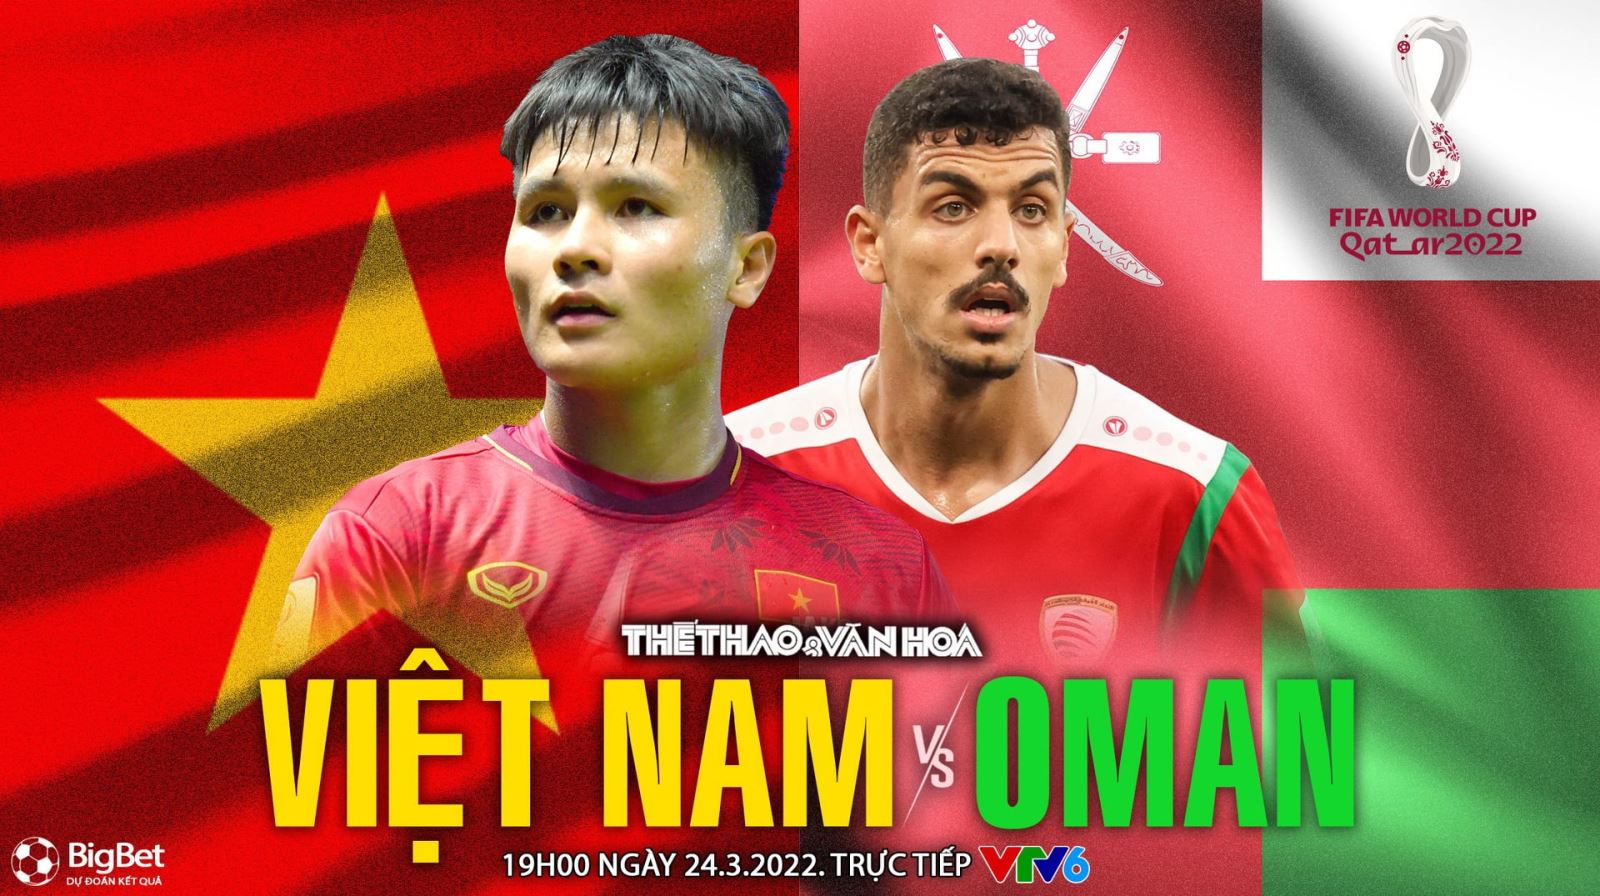 VIDEO Việt Nam vs Oman: VTV6 trực tiếp bóng đá, nhận định bóng đá nhà cái (19h00 hôm nay). VTV5, VTV6 trực tiếp bóng đá VN vs Oman, vòng loại World Cup 2022.